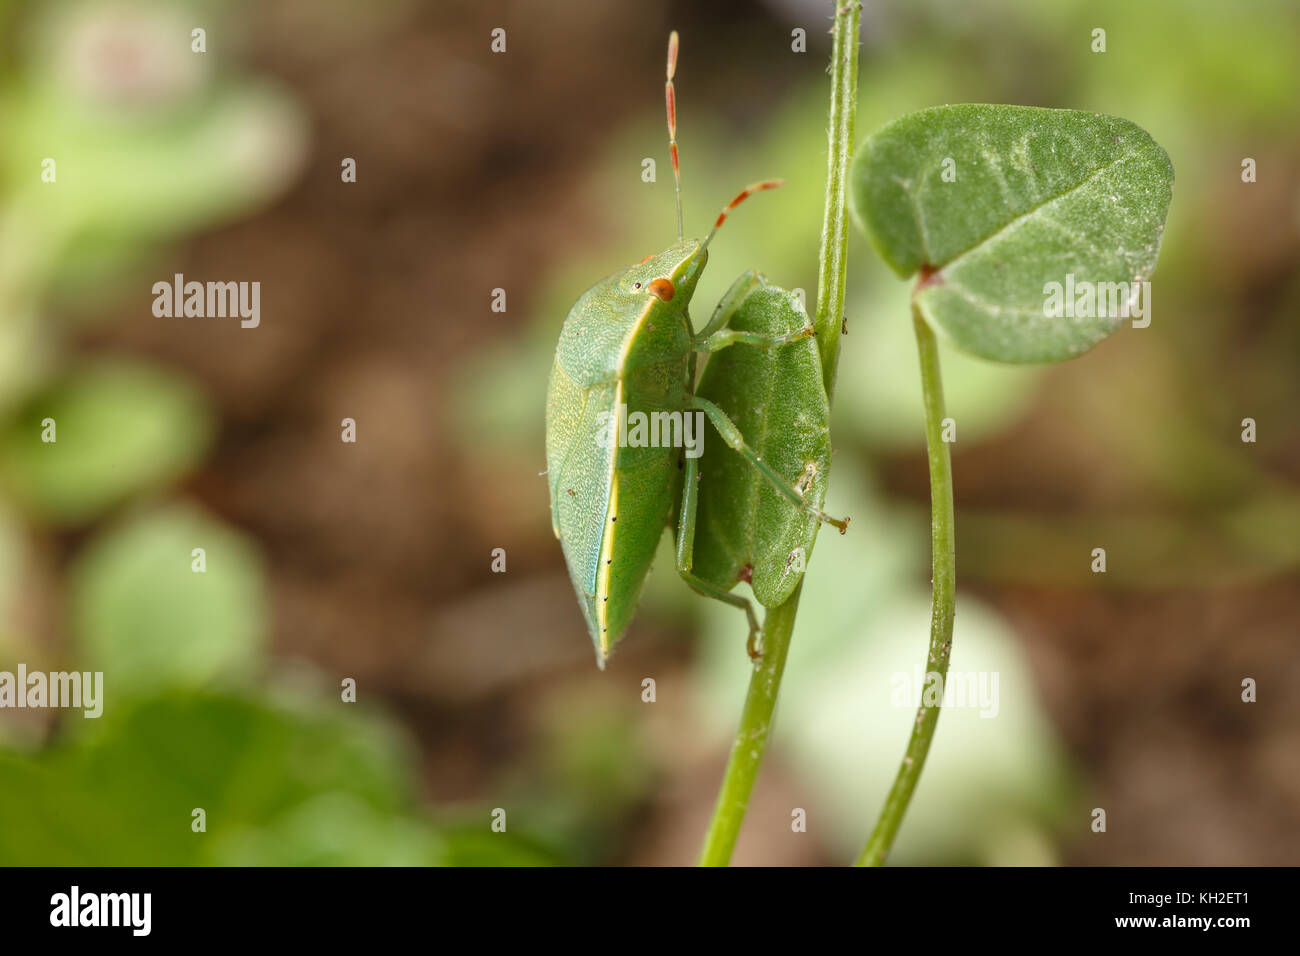 Southern green shield Bug findet seinen Liebling verlässt. Beispiel für die Mimikry der Nezara viridula der lokalen Vegetation von Raubtieren zu verbergen Stockfoto